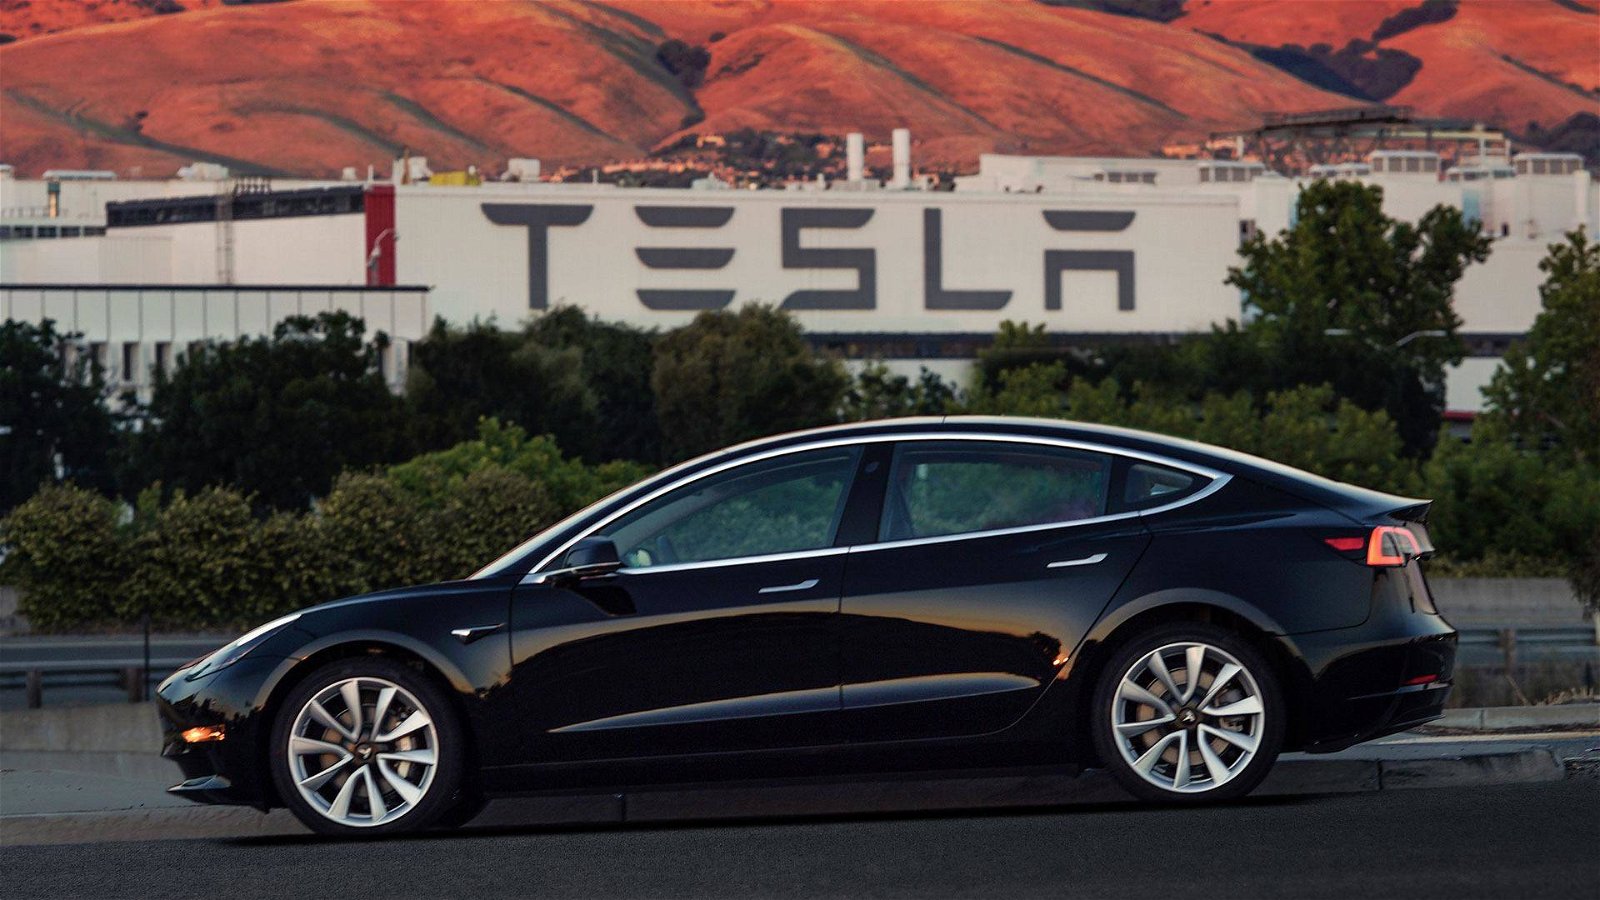 Immagine di Tesla, a breve "Full Self-Driving" in versione beta